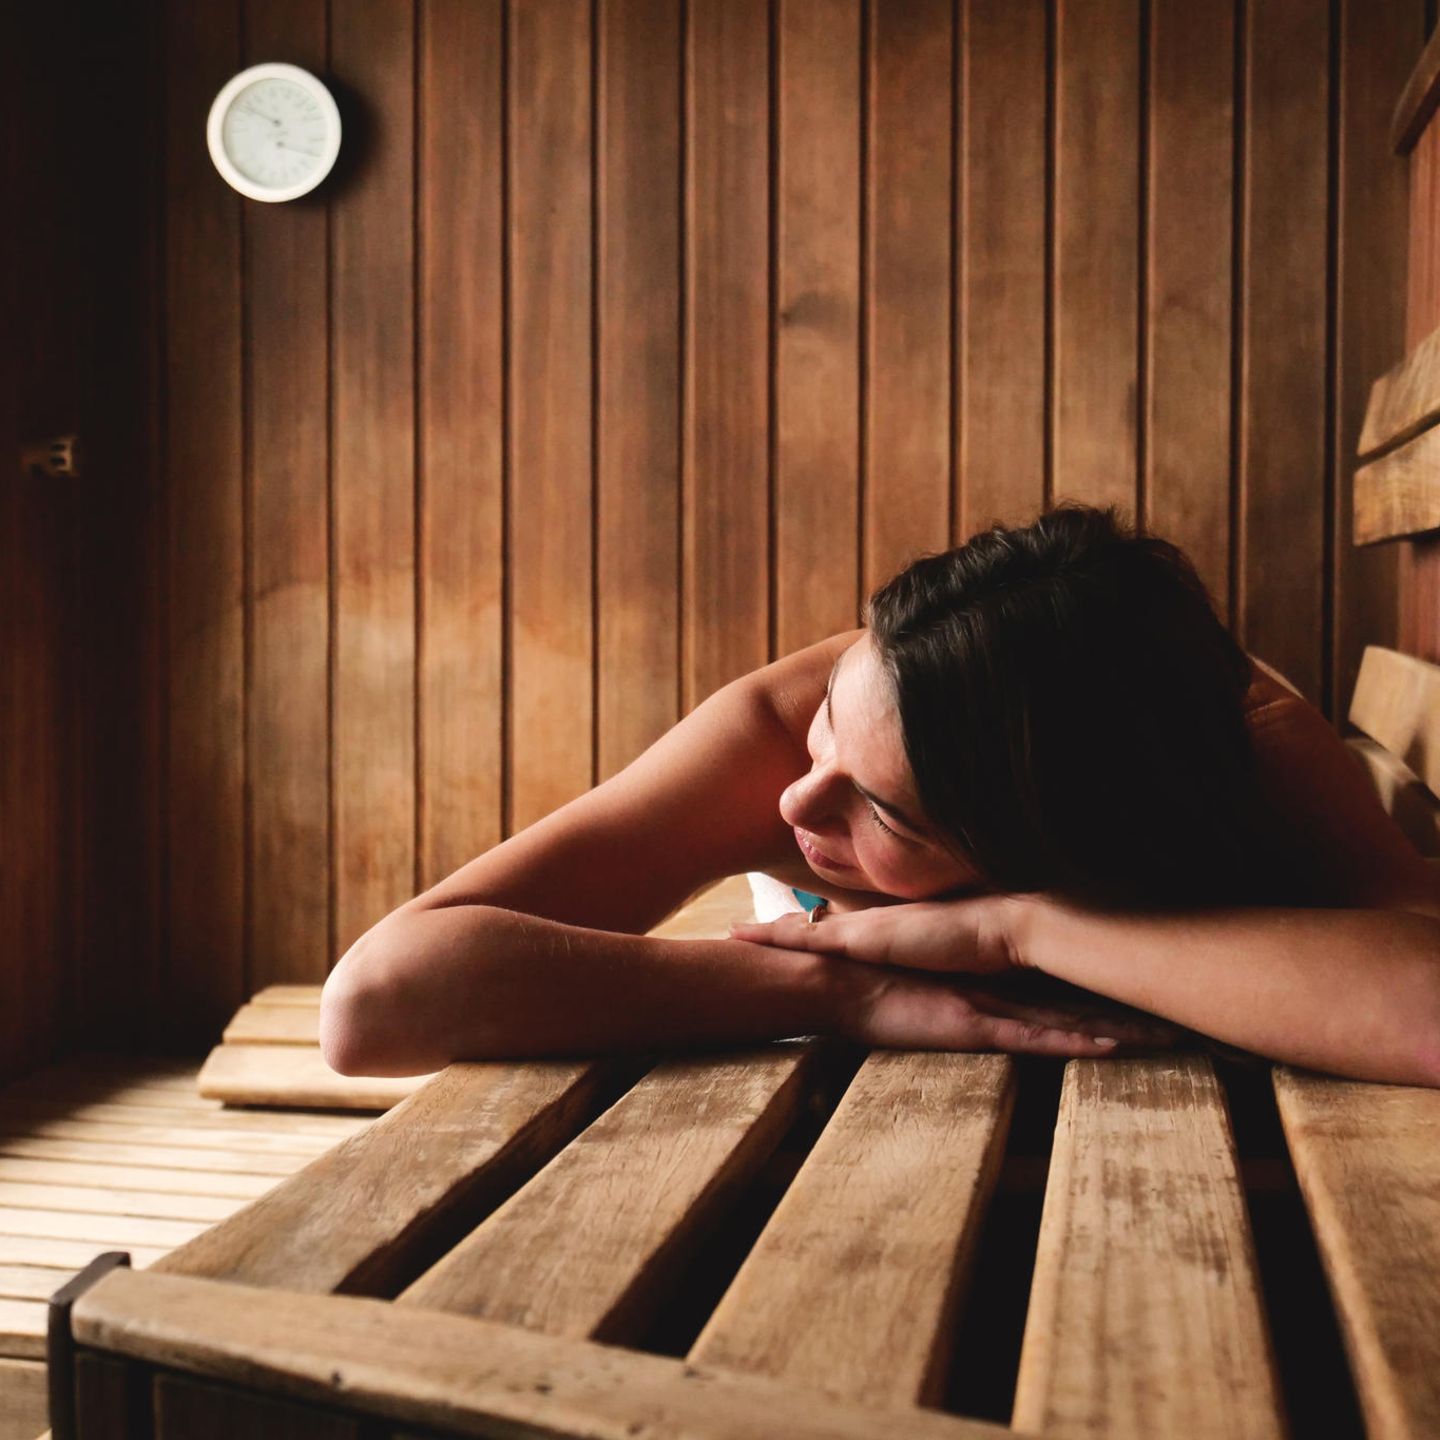 Frauen nackt in der sauna 💖 Muss ich in der Sauna nackt sein